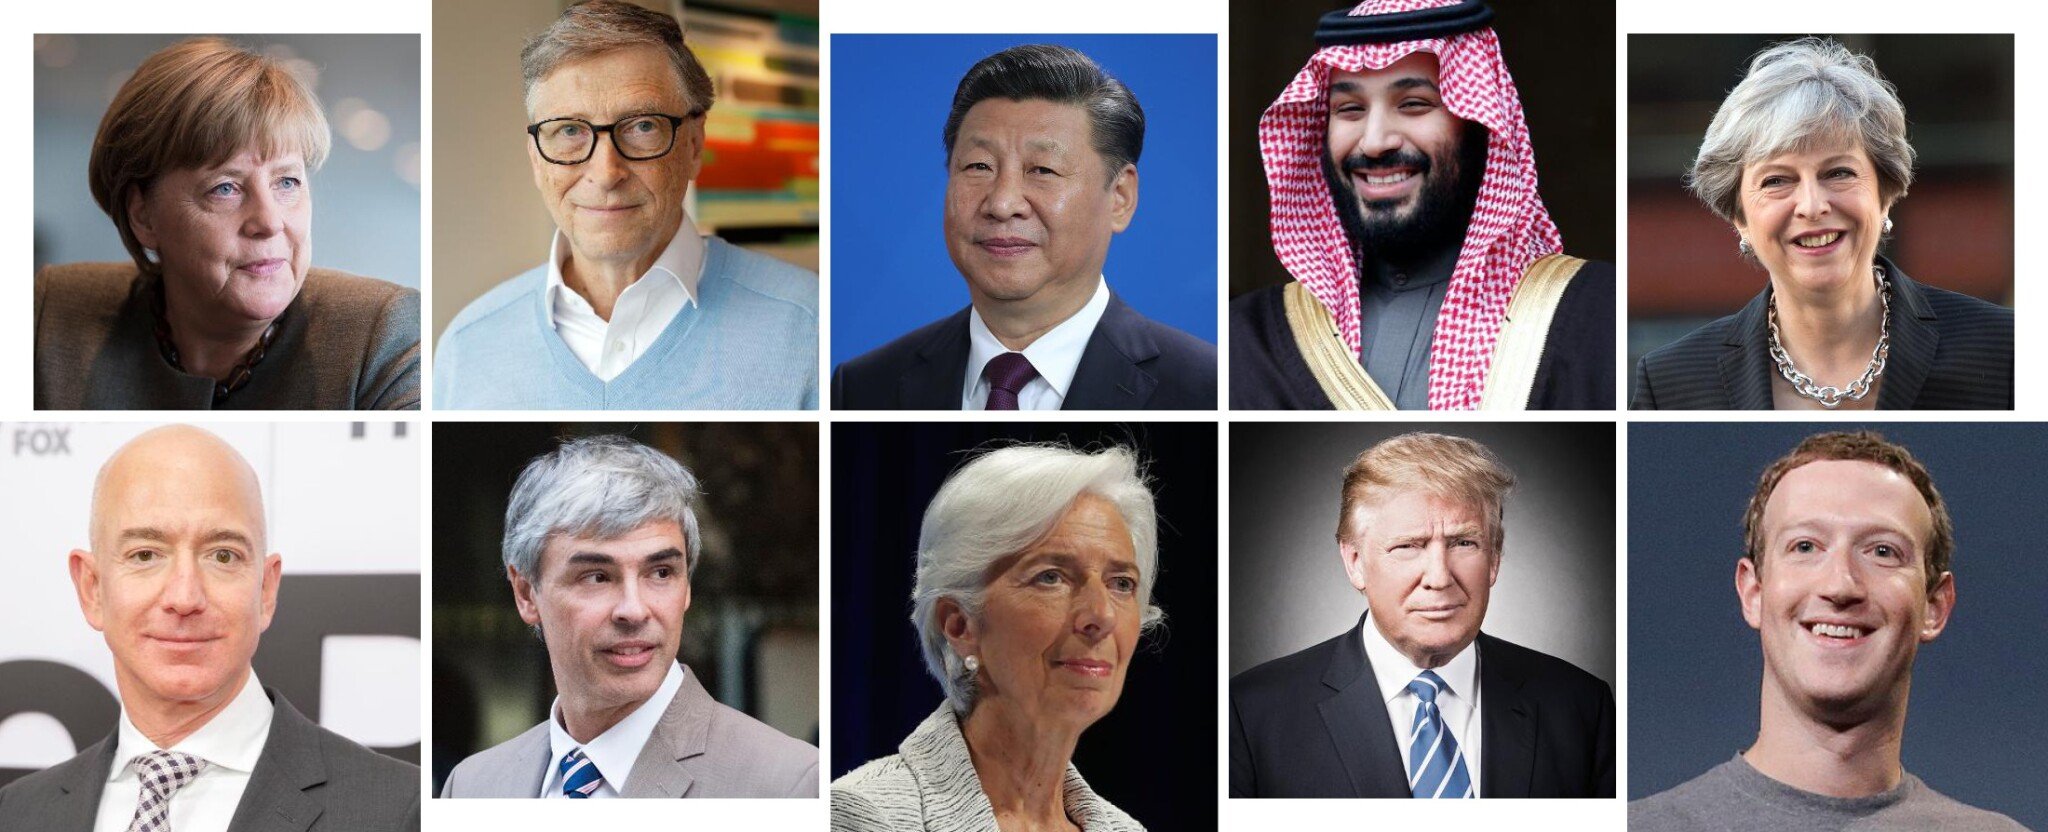 Si Ťin-pching, Putin, Gates. Kdo jsou nejmocnější lidé světa roku 2018?